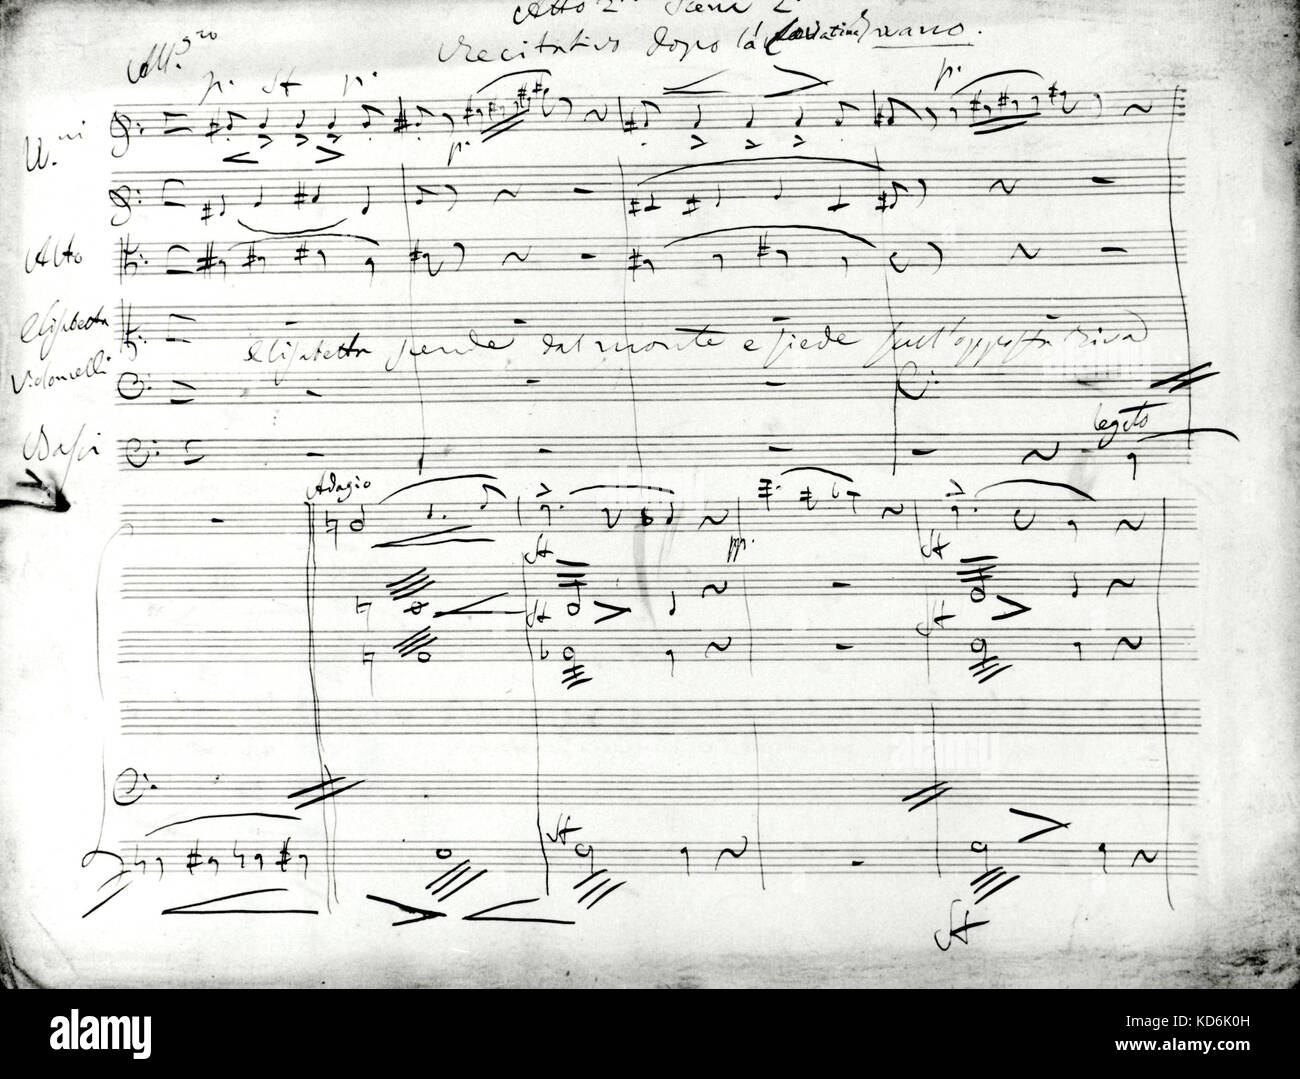 Donizettis hand Score zu seiner Oper "Elisabetta", Act II, Scene II geschrieben Stockfoto